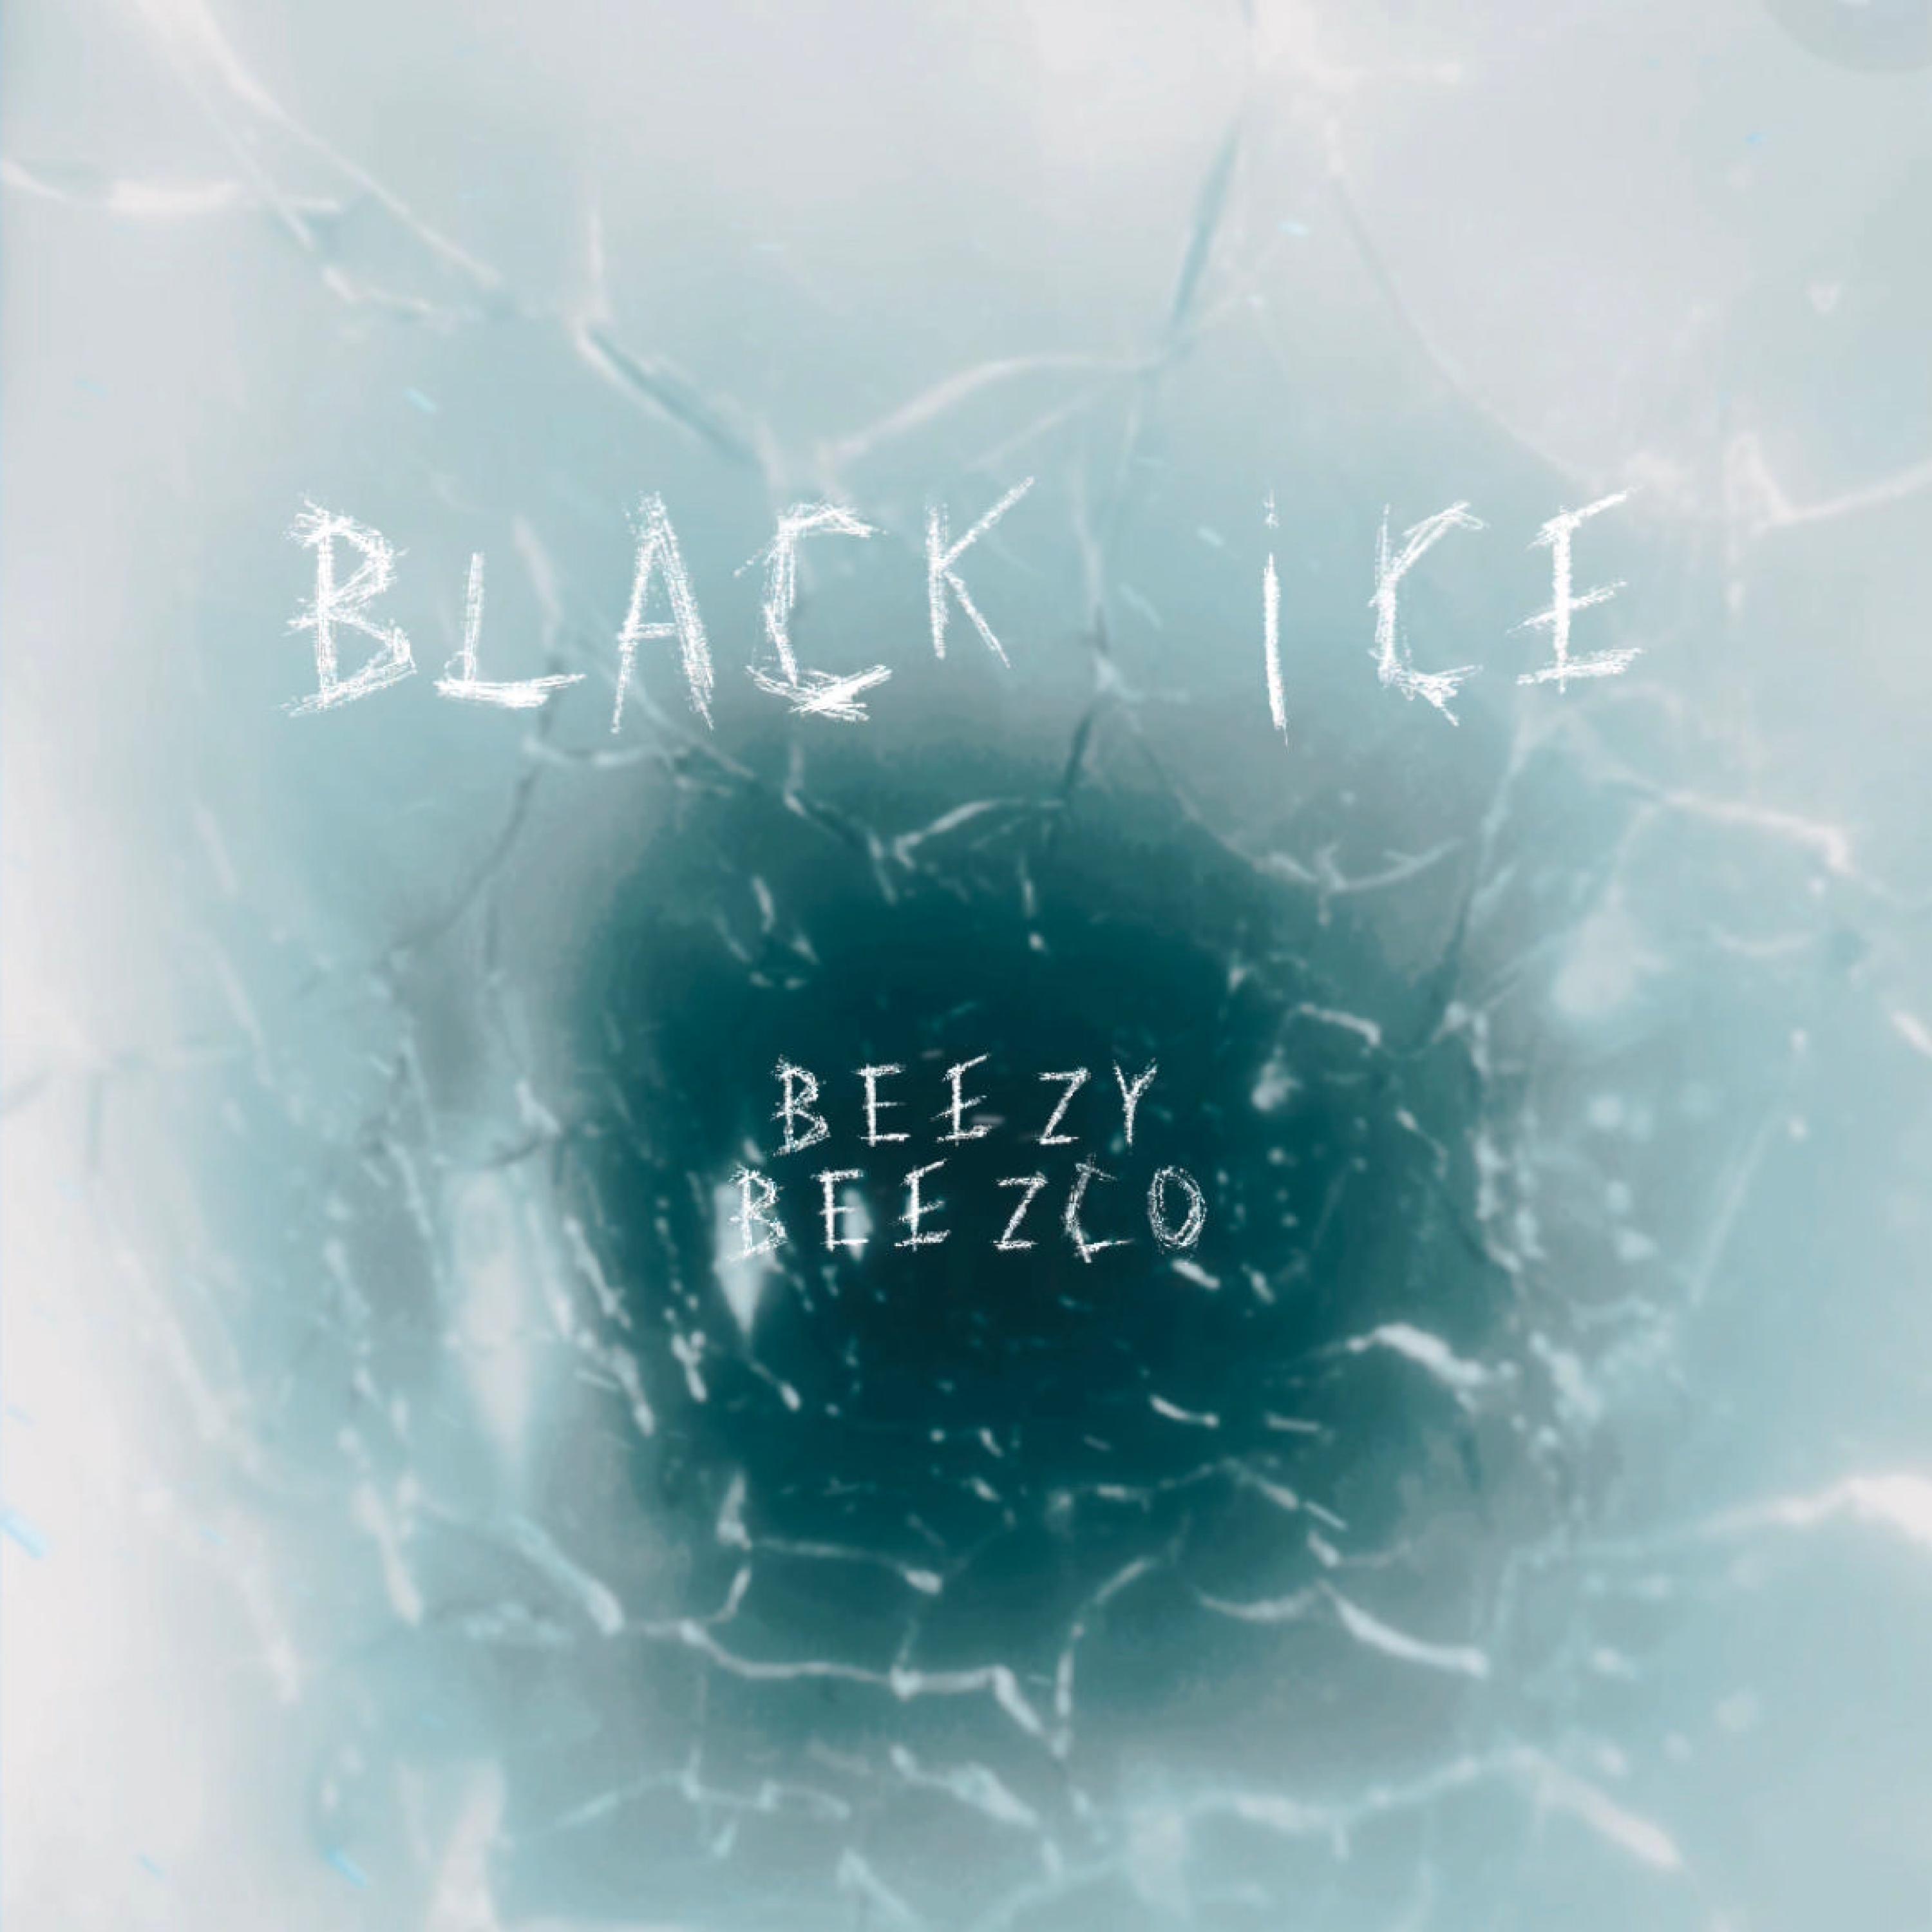 Beezco - Black Ice